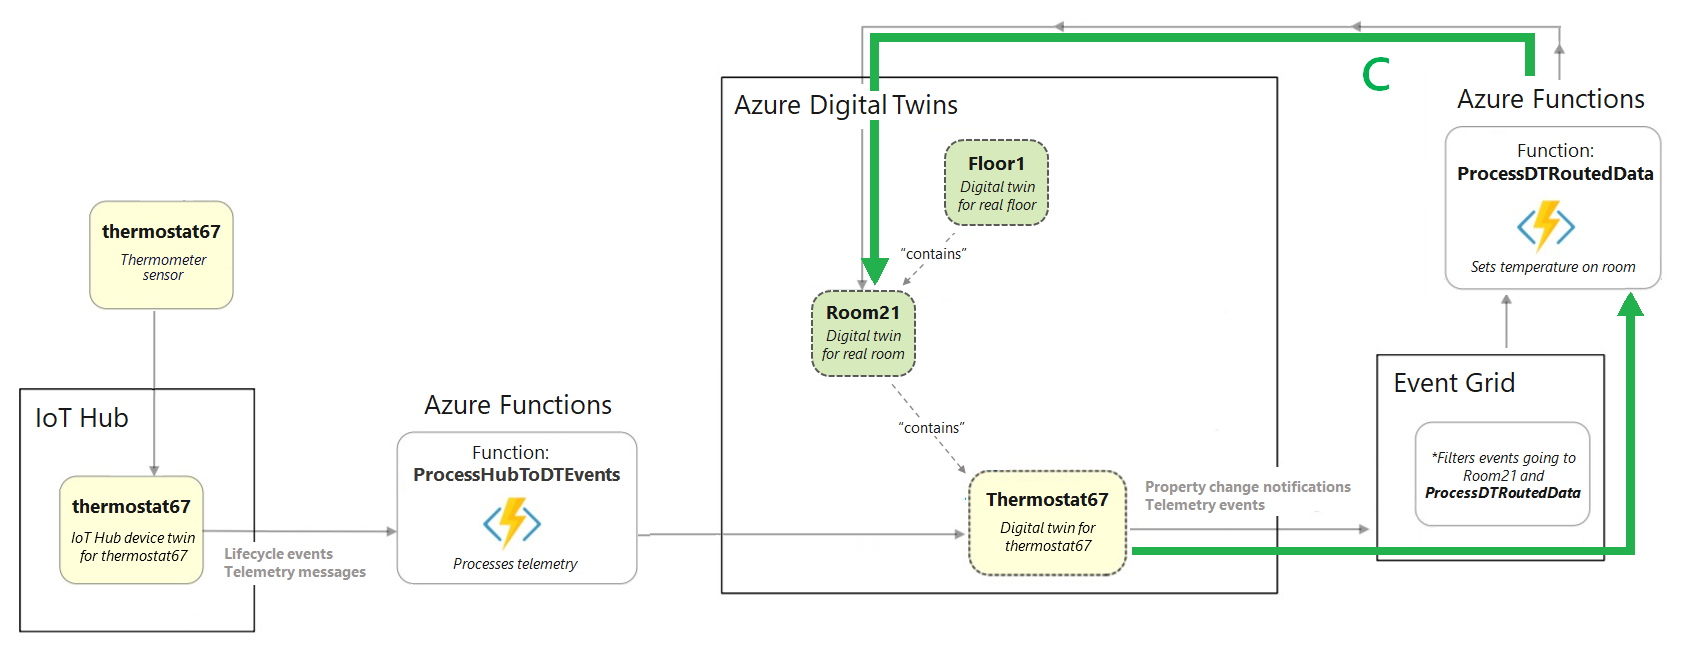 Diagram przedstawiający fragment diagramu pełnego scenariusza budynku z wyróżnioną sekcją przedstawiającą elementy po usłudze Azure Digital Twins.